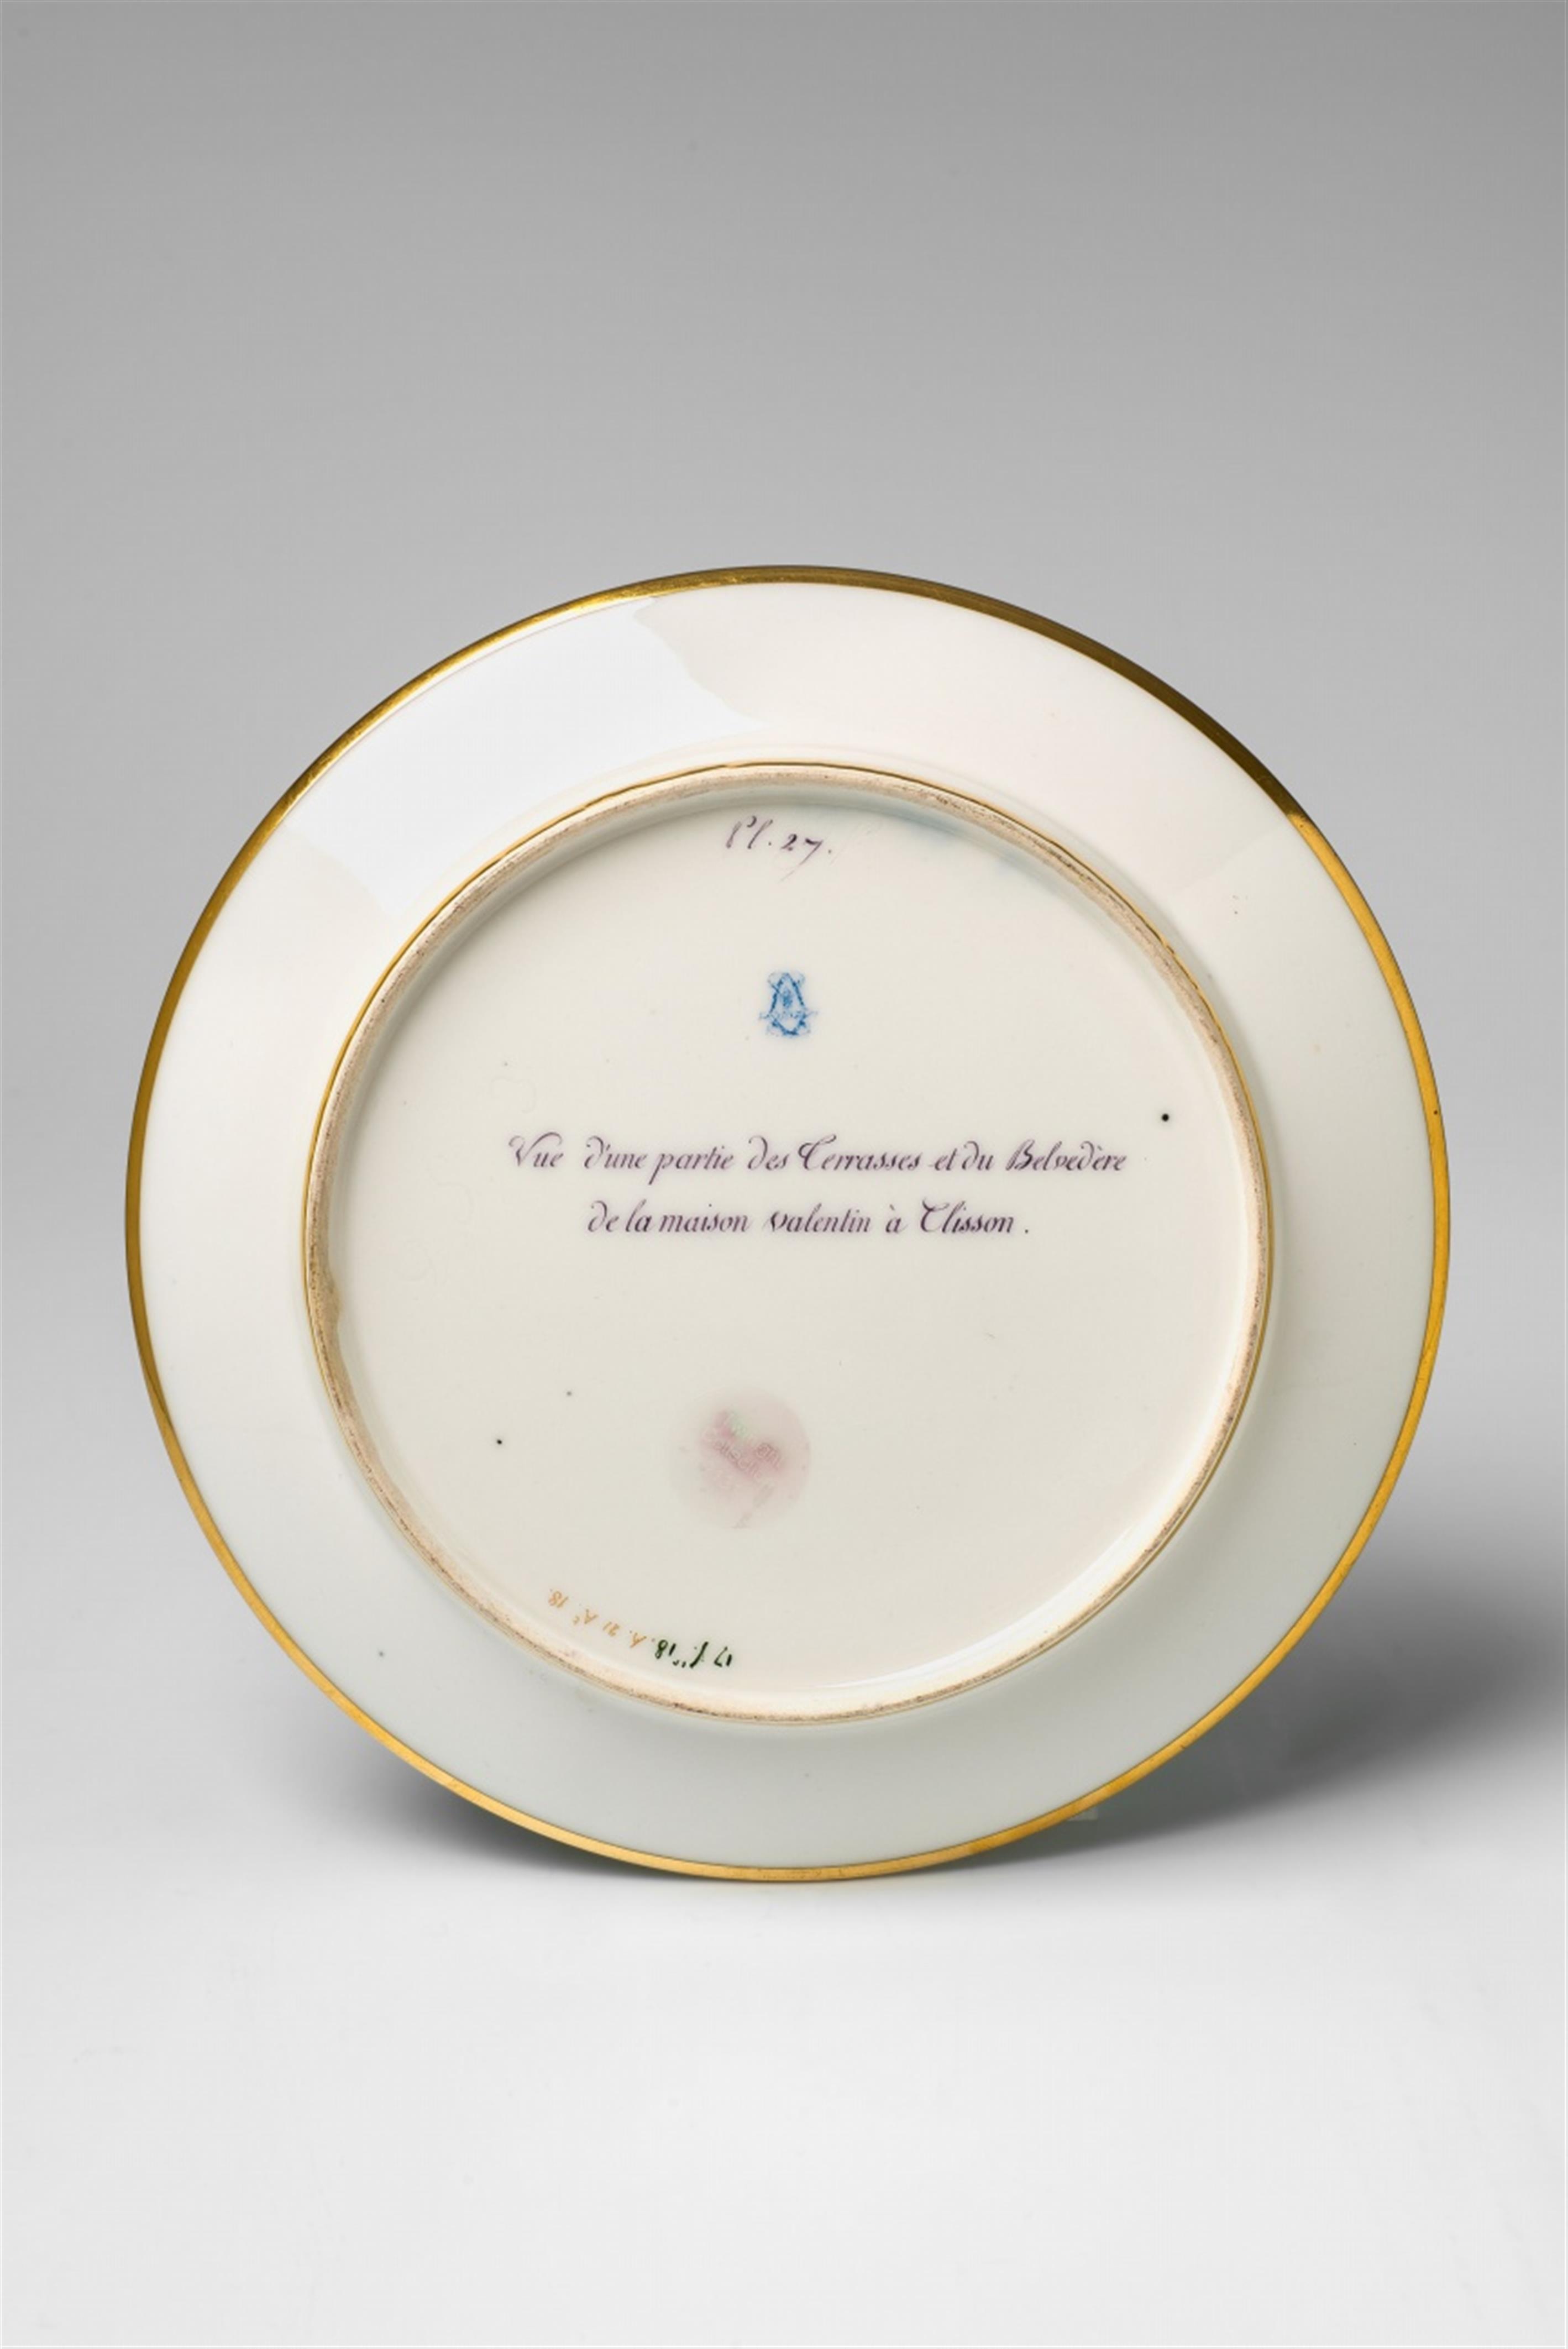 A Sèvres porcelain plate "Maison Valentin à Clisson" - image-2